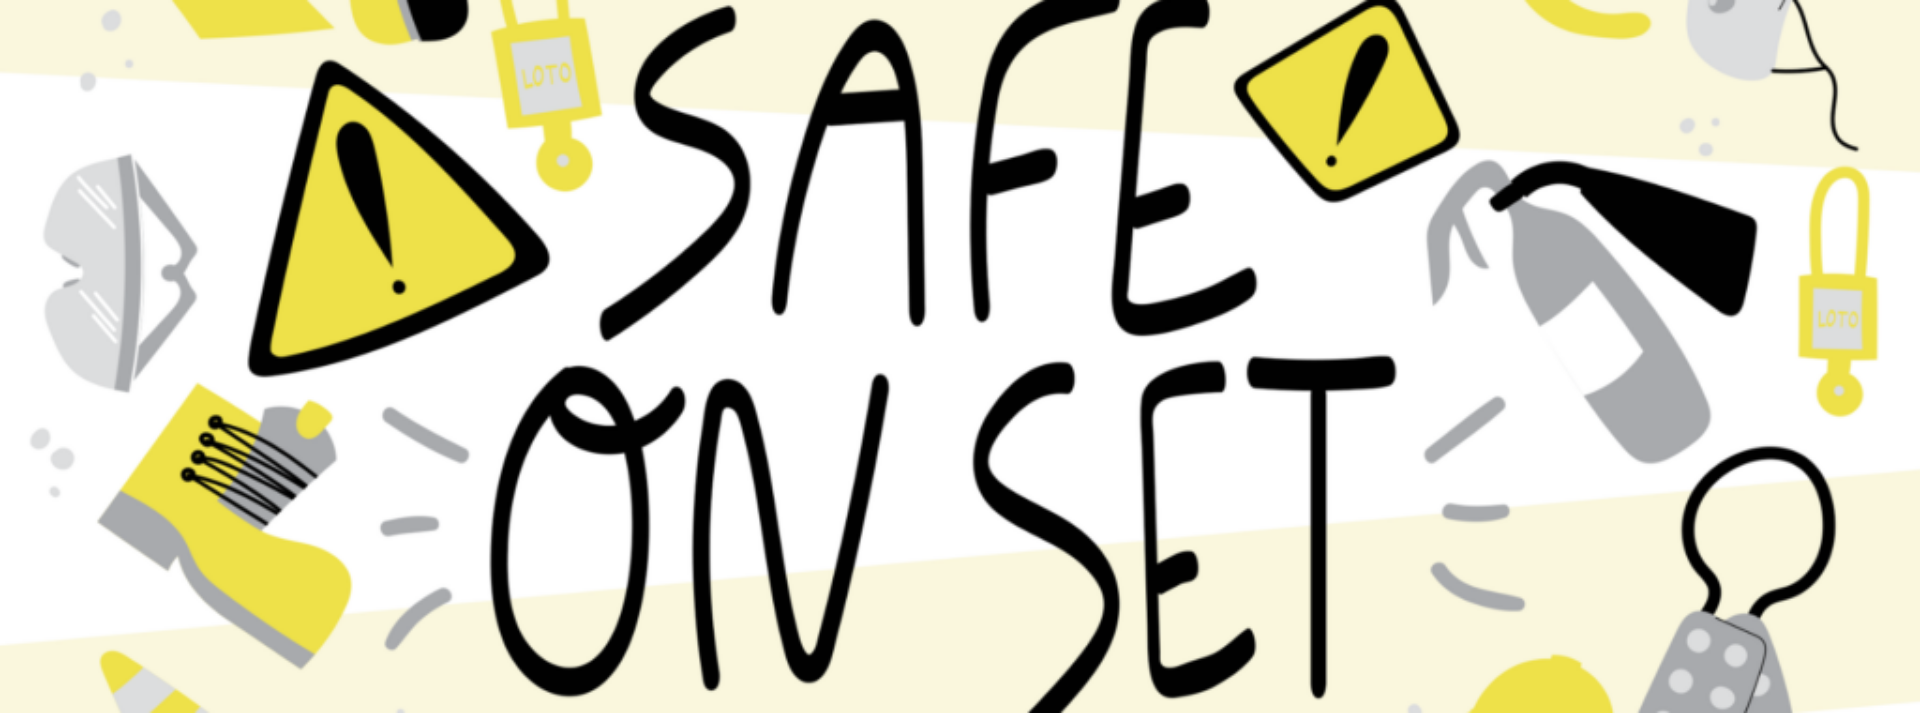 Safe on Set Blog banner 1920x800